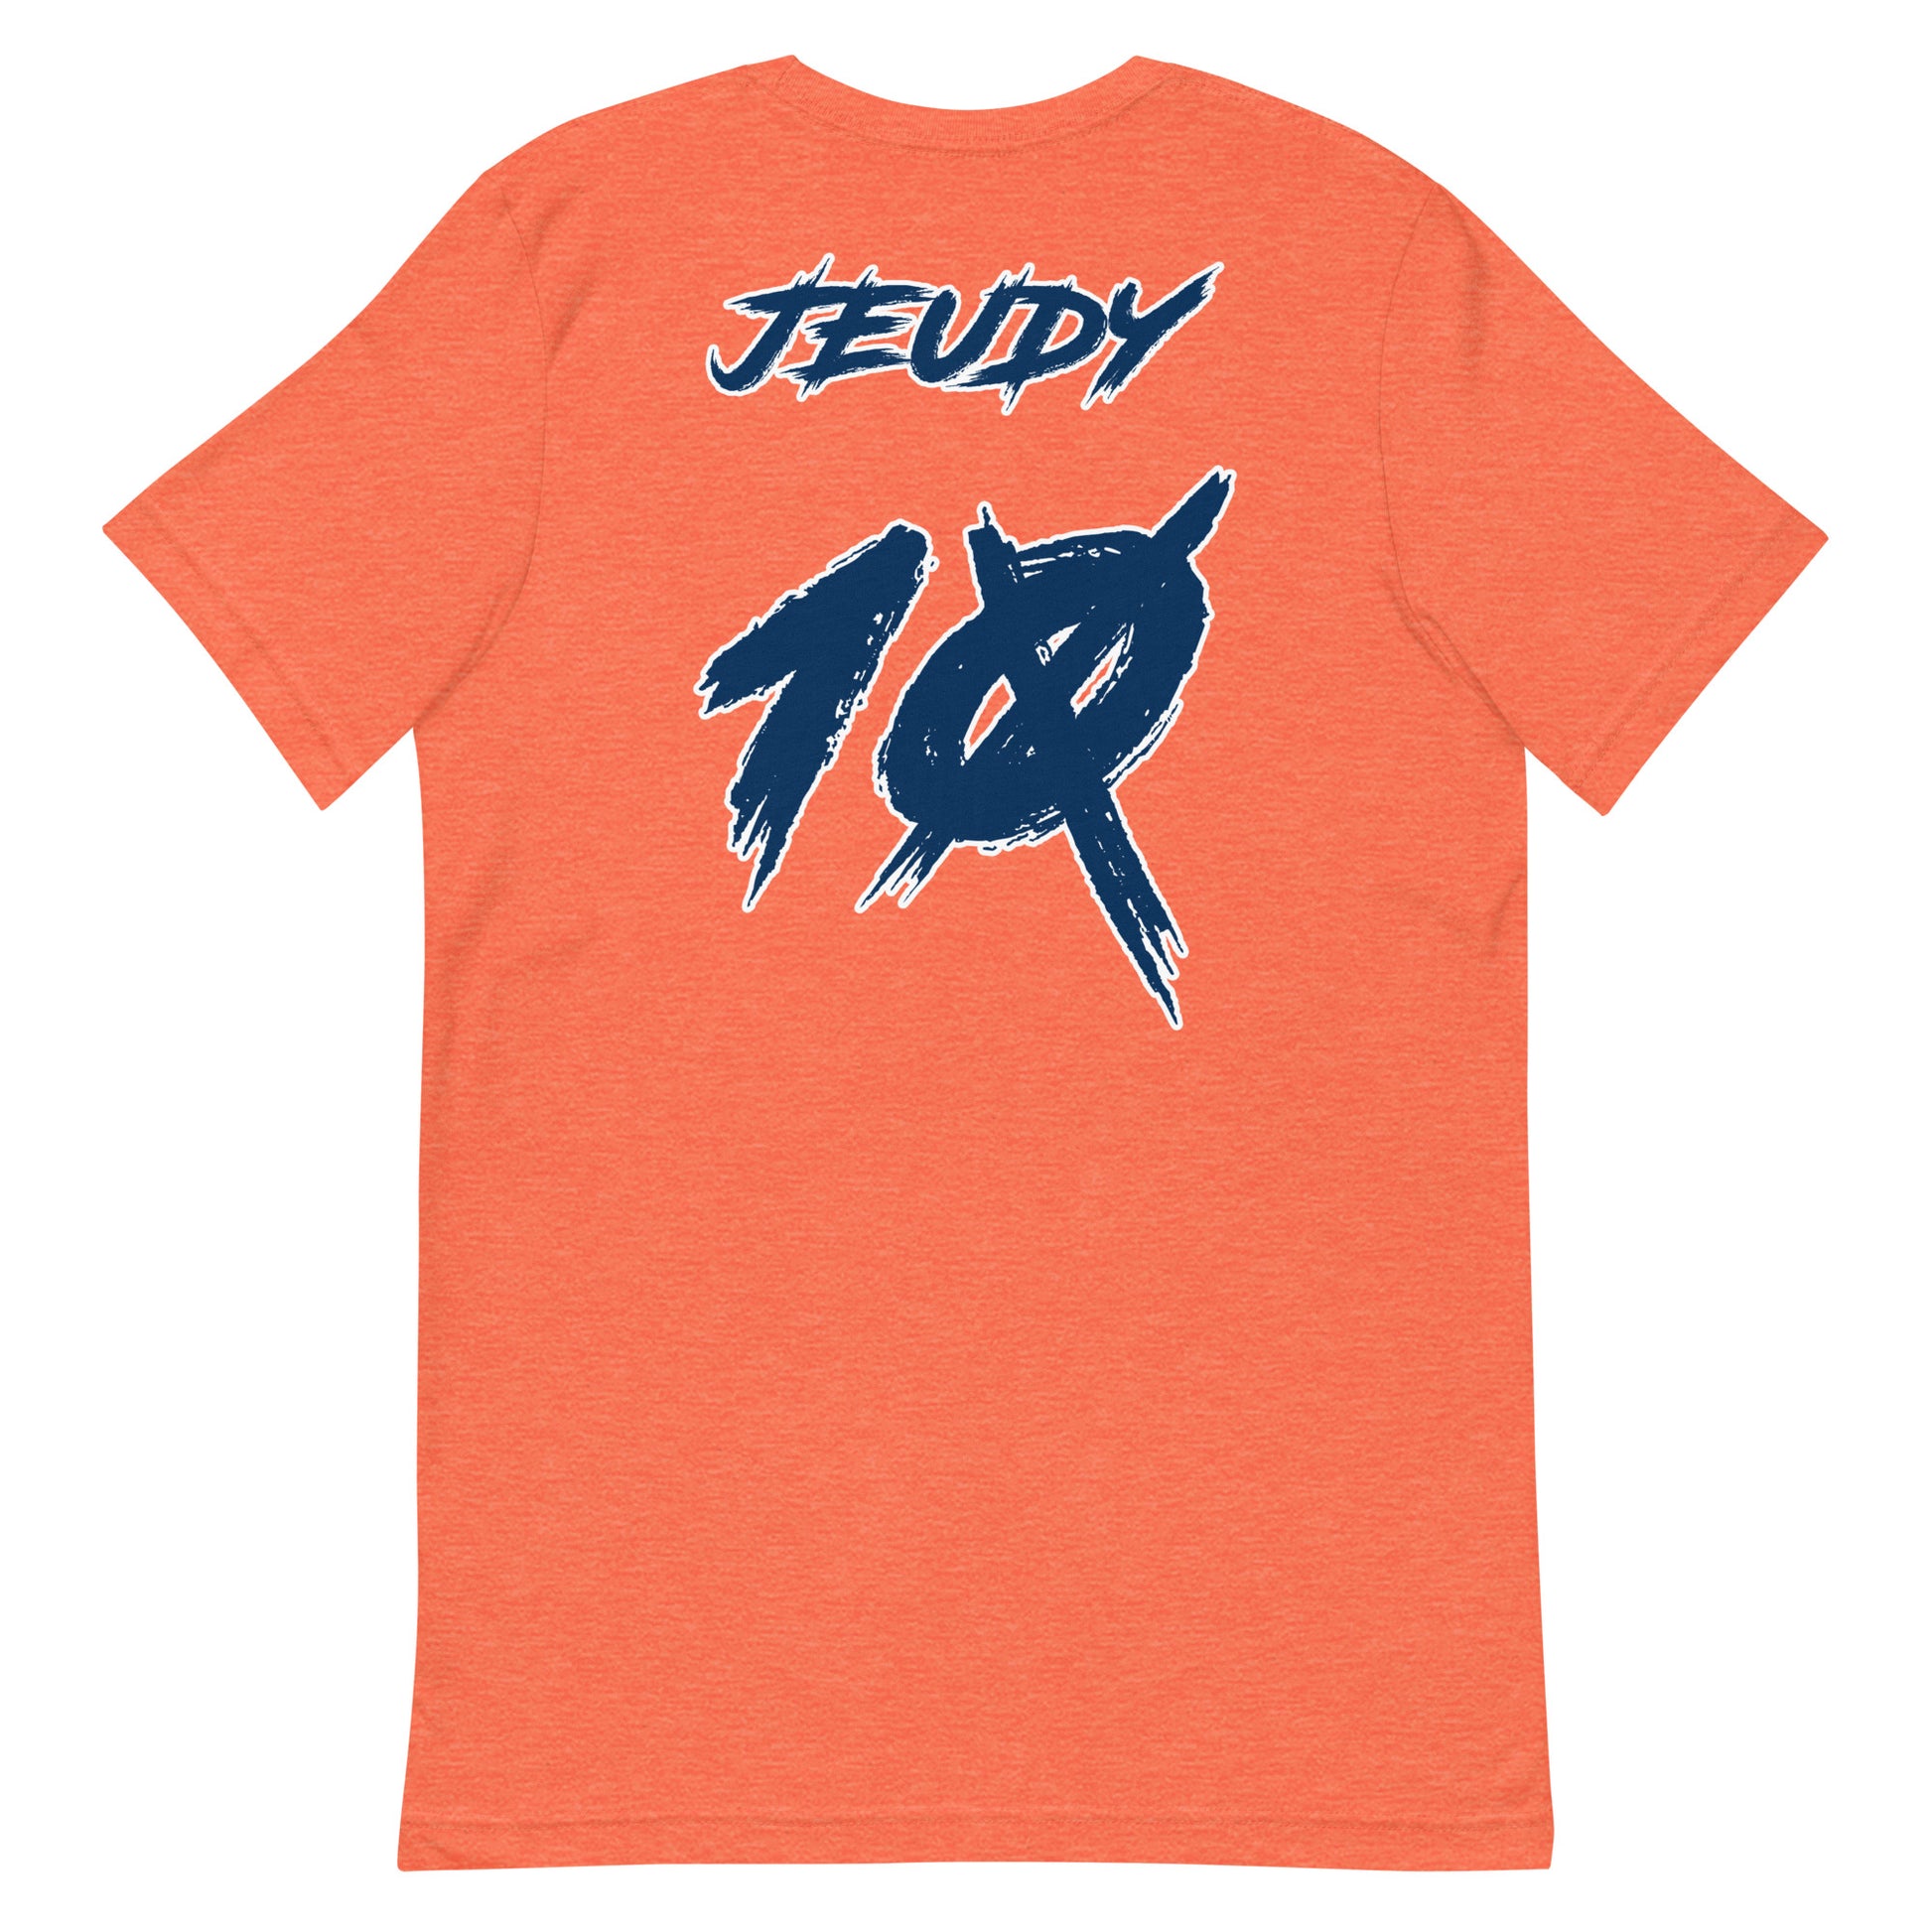 Jeudy 10X T-Shirt: Orange